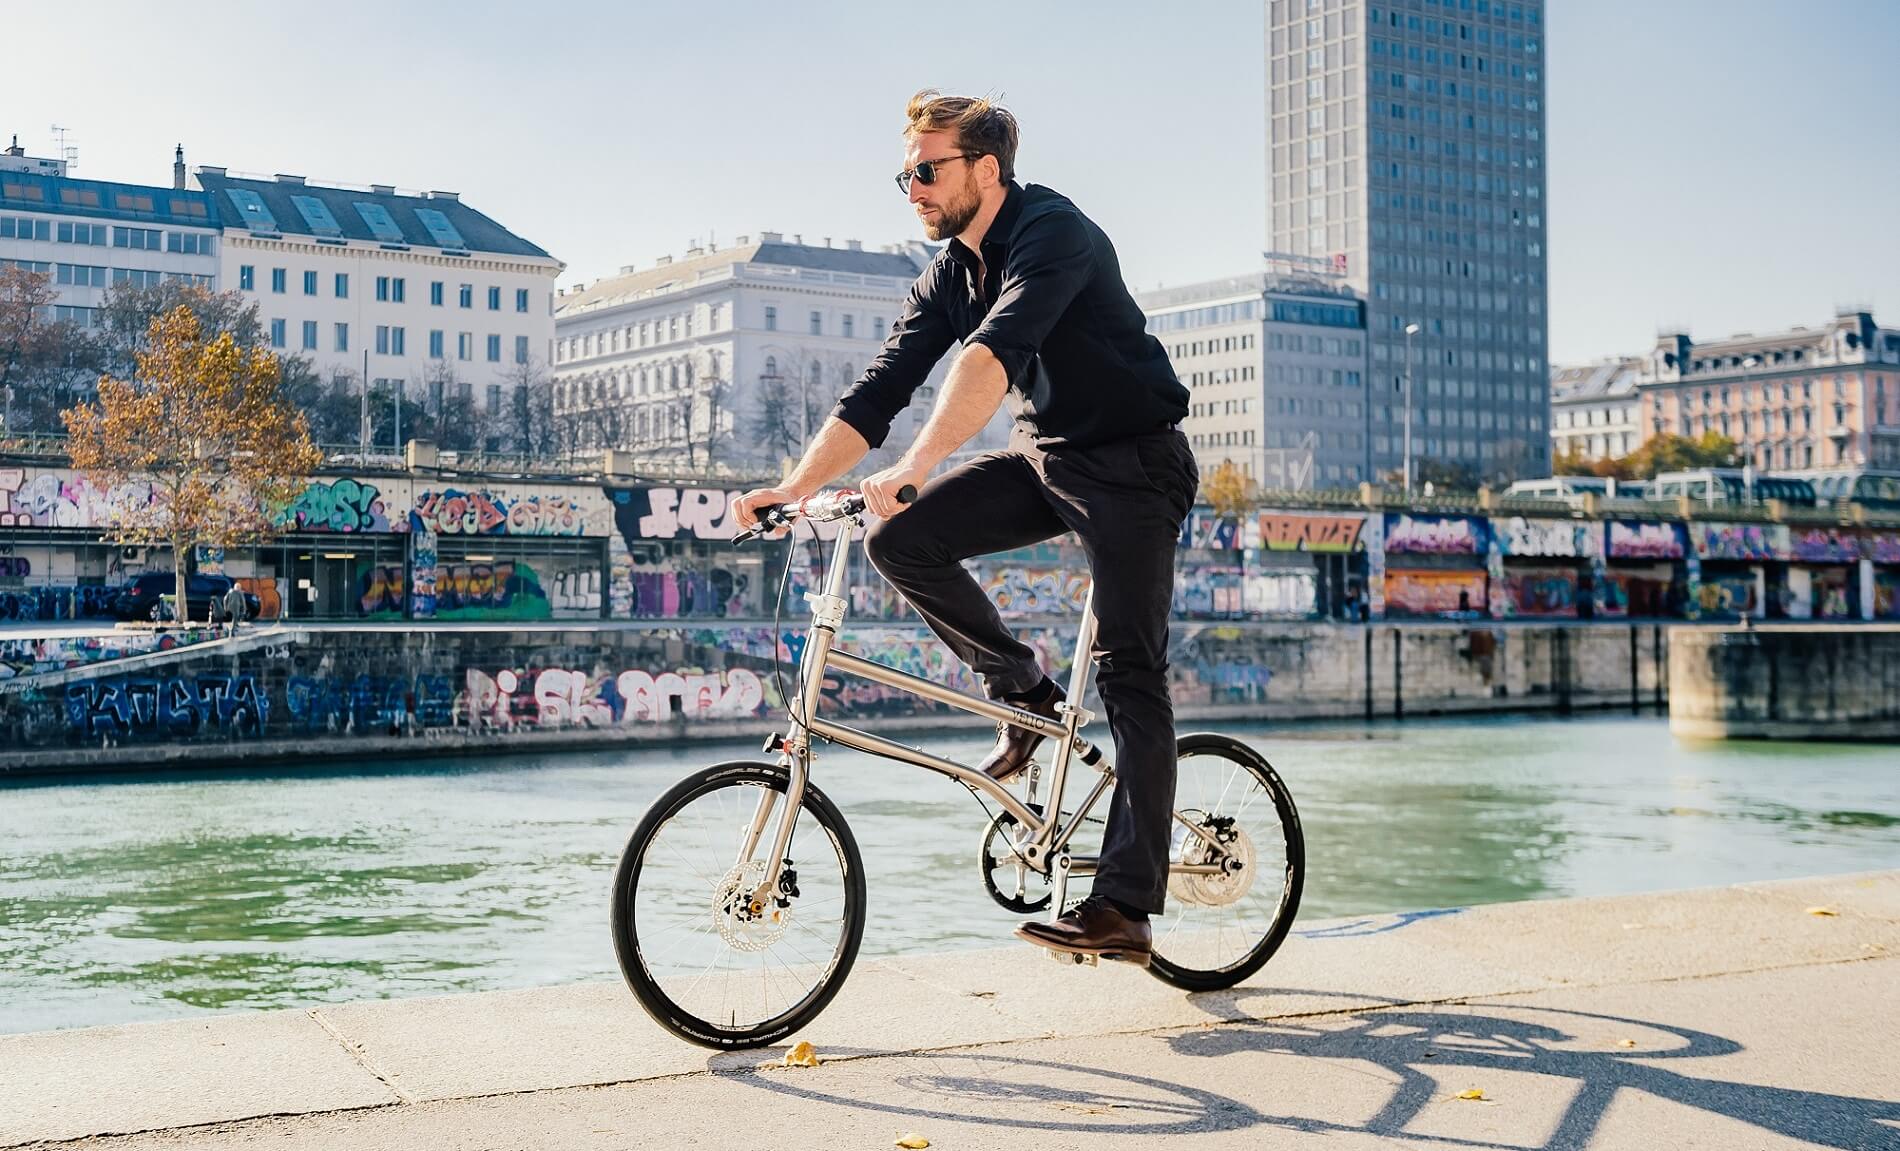 VELLO bike launches Conda crowdinvest campaign